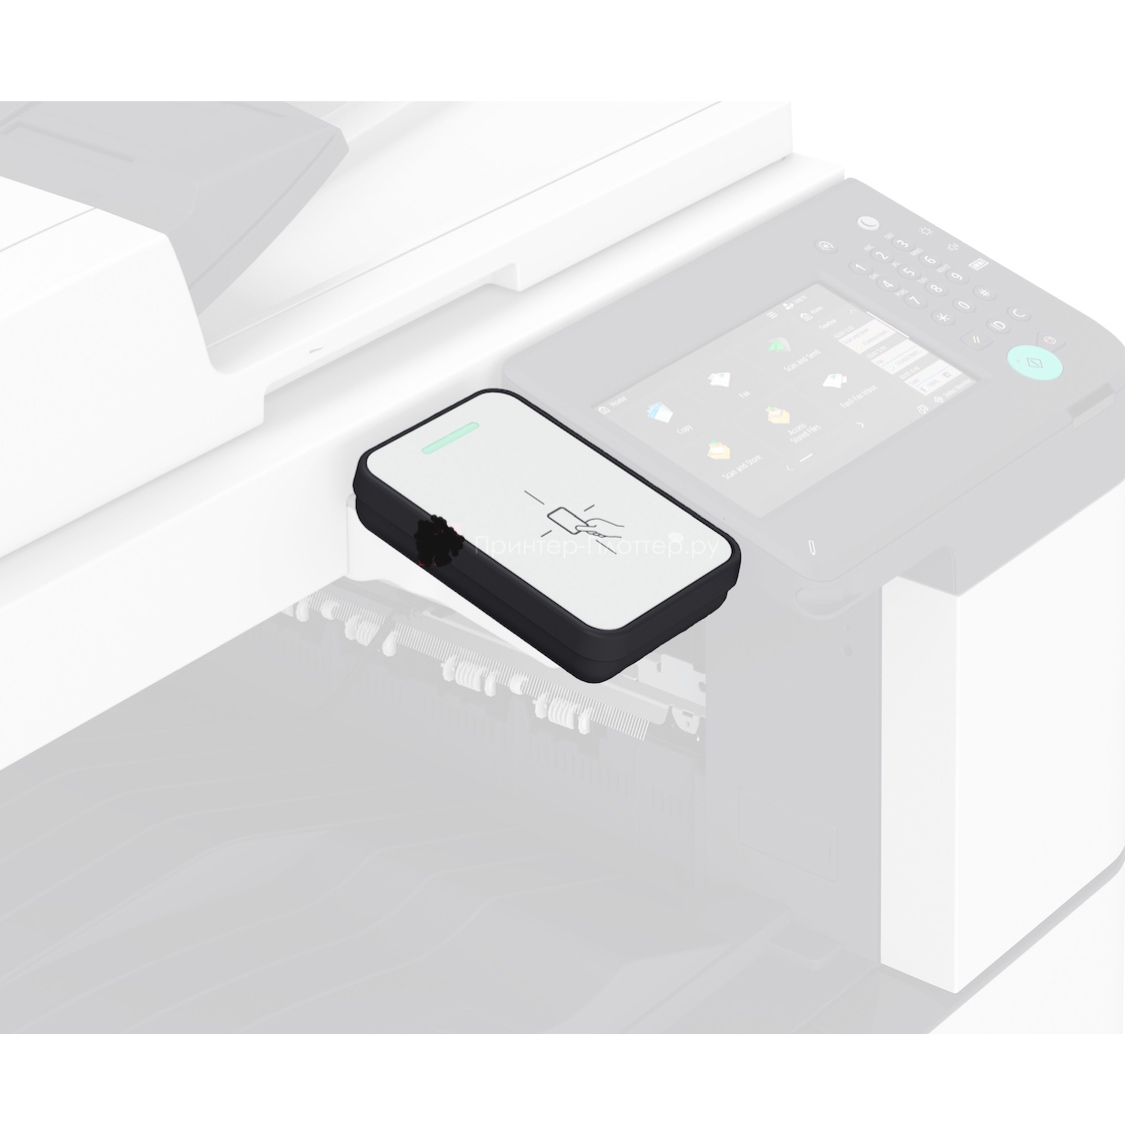 Canon короб для крепления и защиты устройства считывания смарт-карт IC Card Reader Box-C2